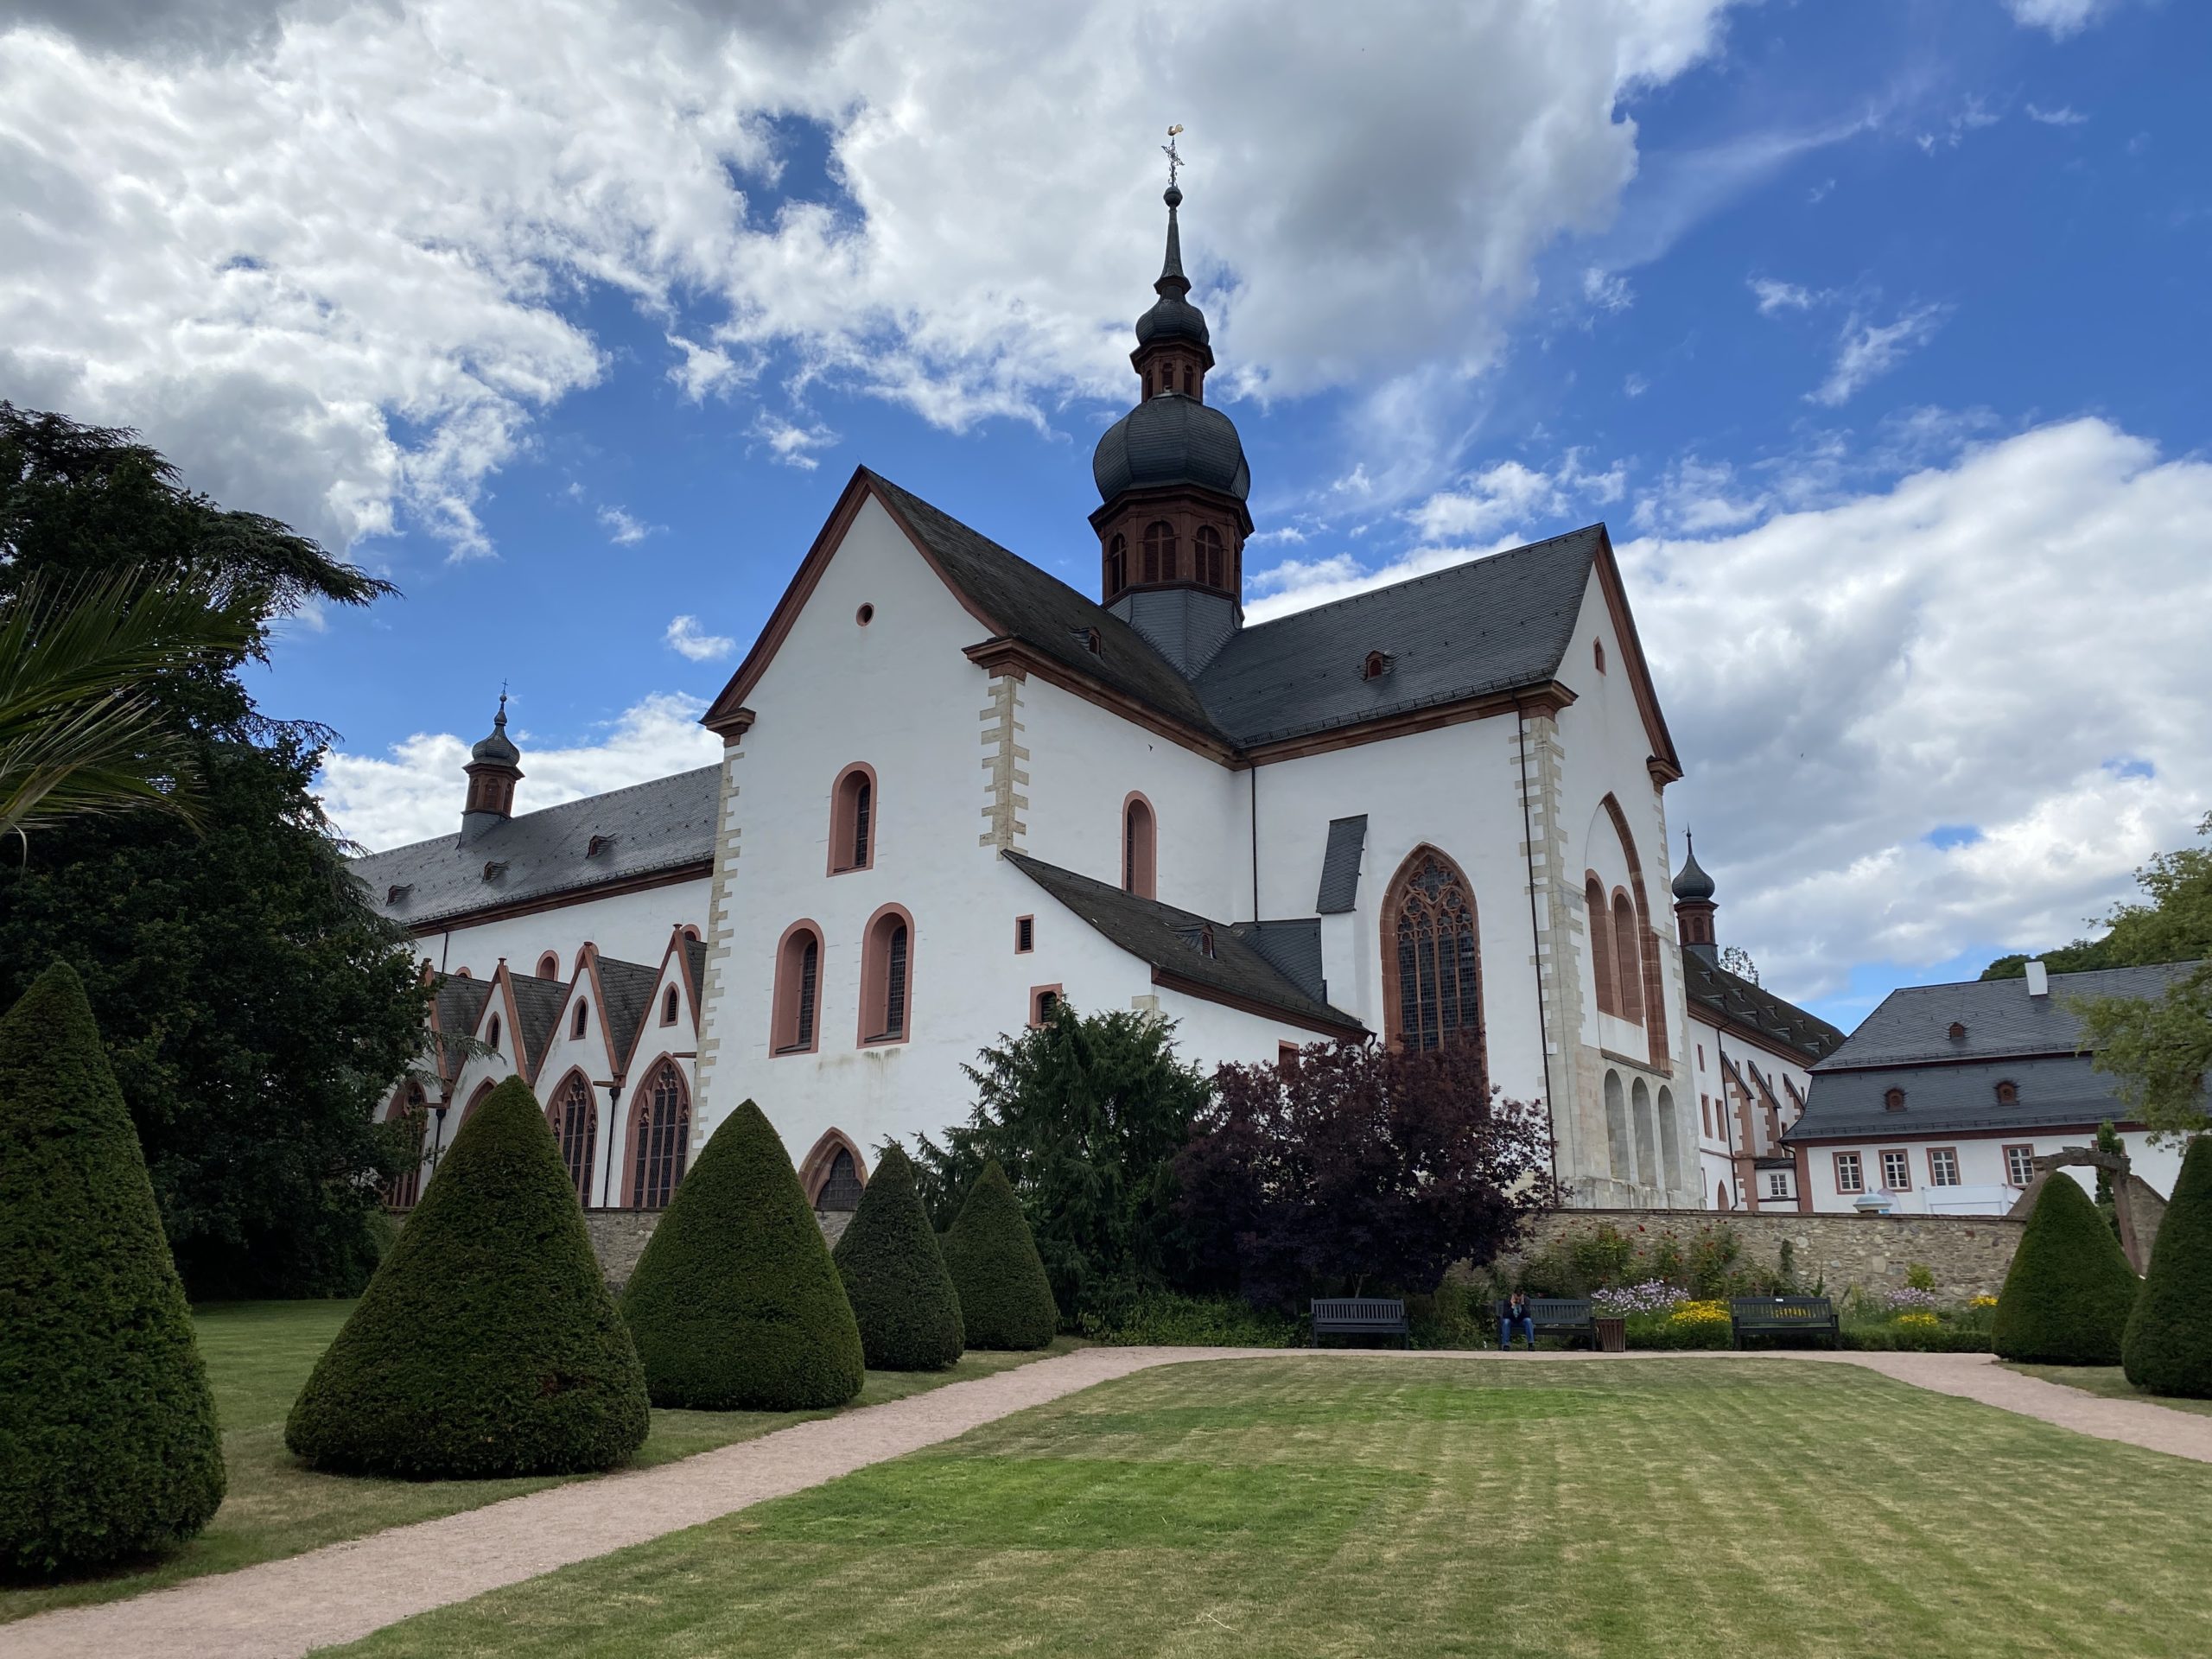 フランクフルトから車で40分 Kloster Eberbach Eltville いろいろドイツ